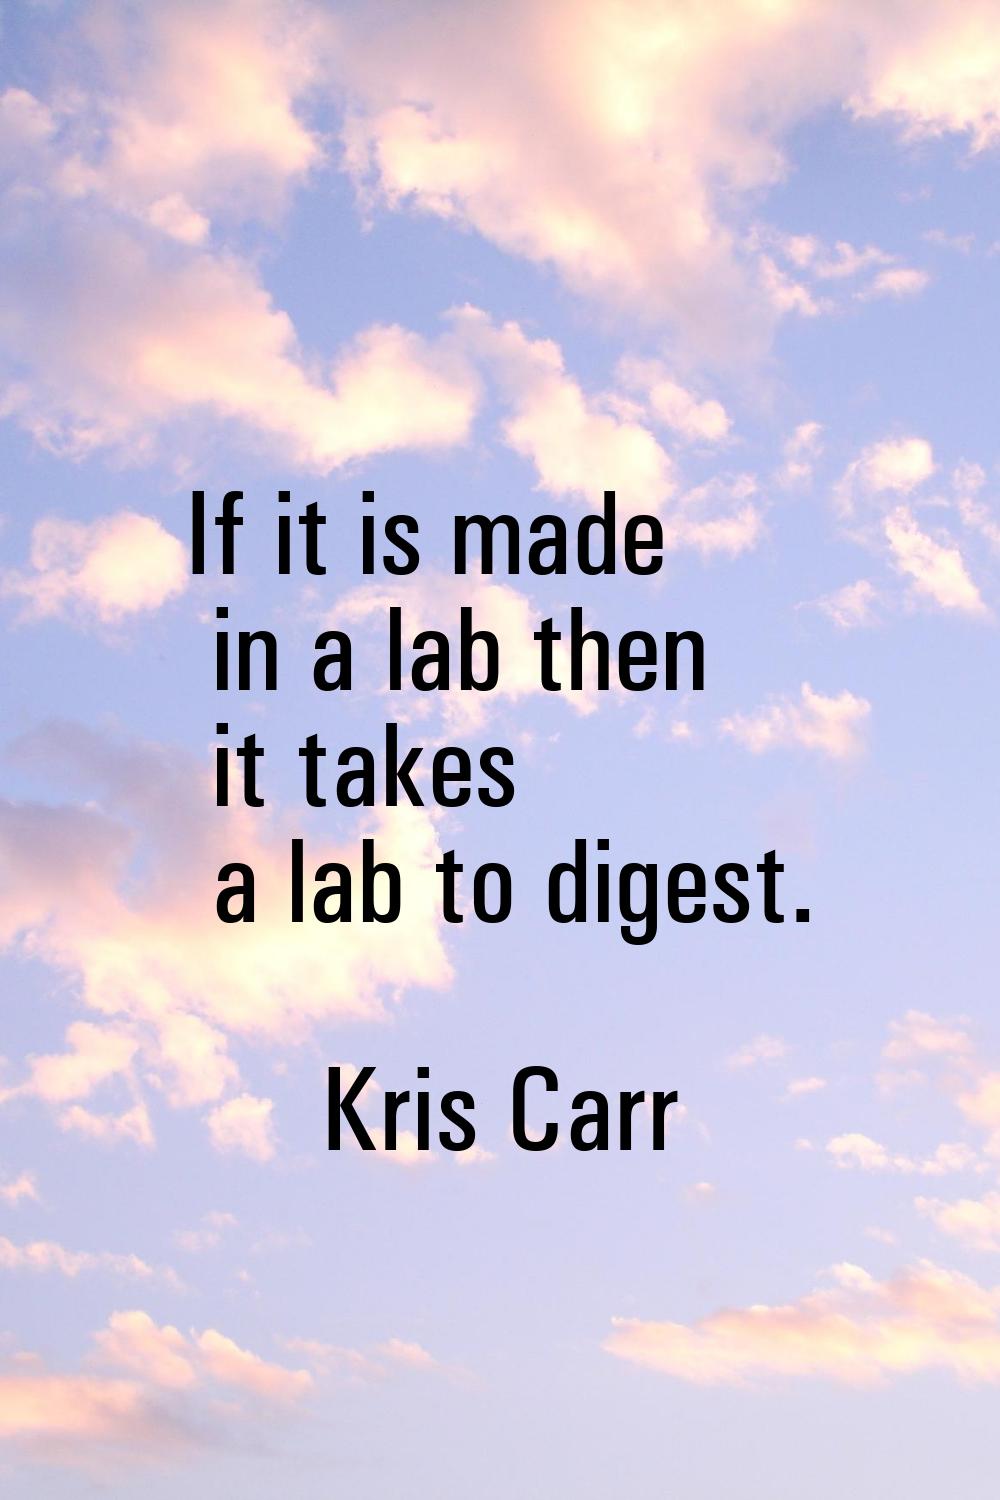 If it is made in a lab then it takes a lab to digest.